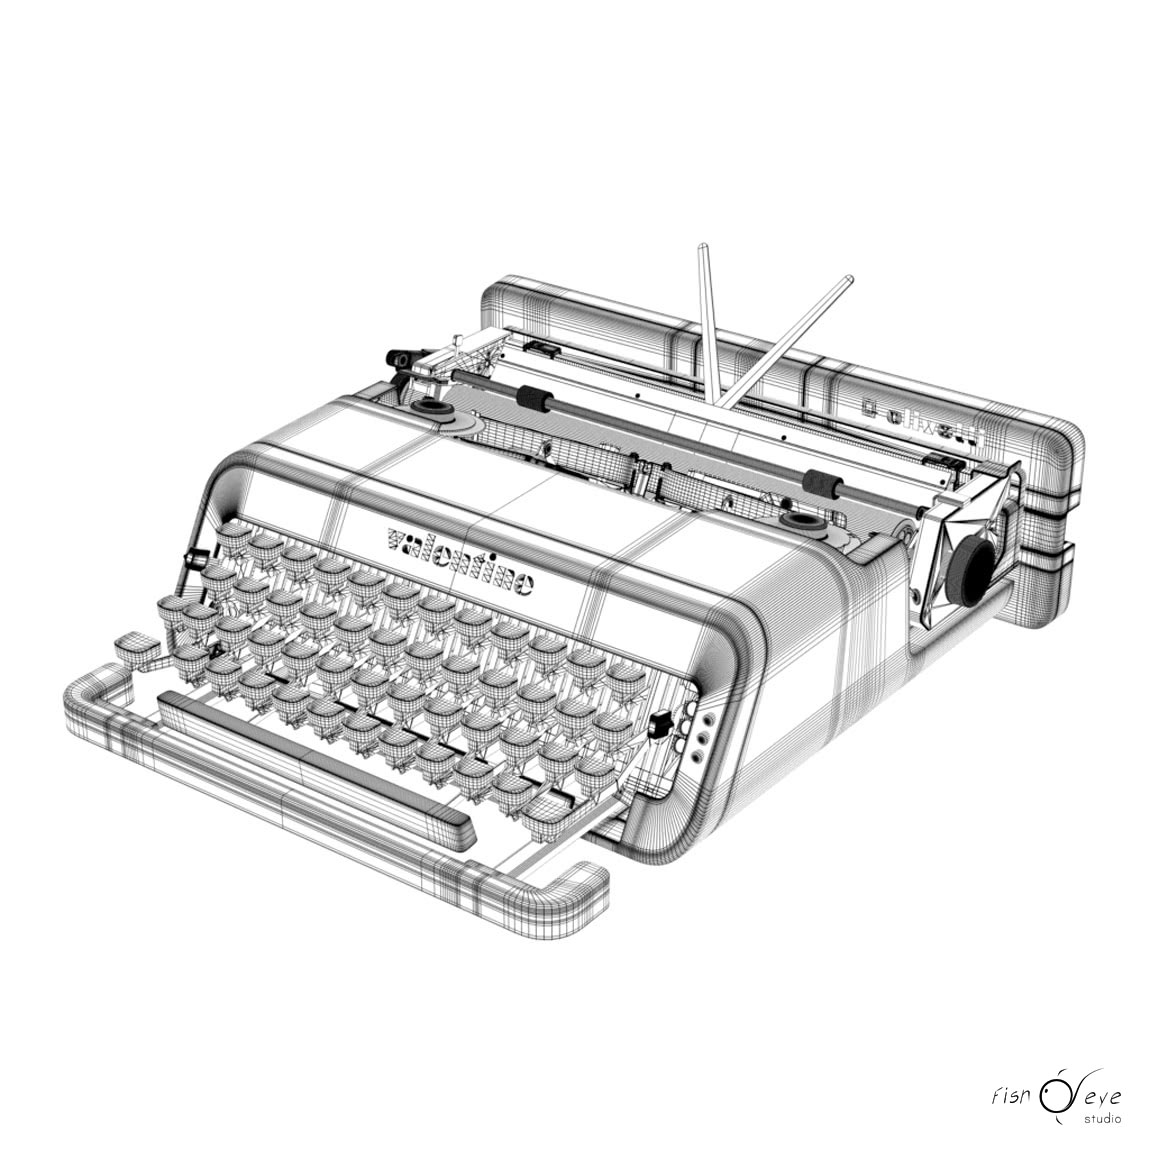 Modello 3d di una macchina da scrivere Olivetti Valentine wireframe 01